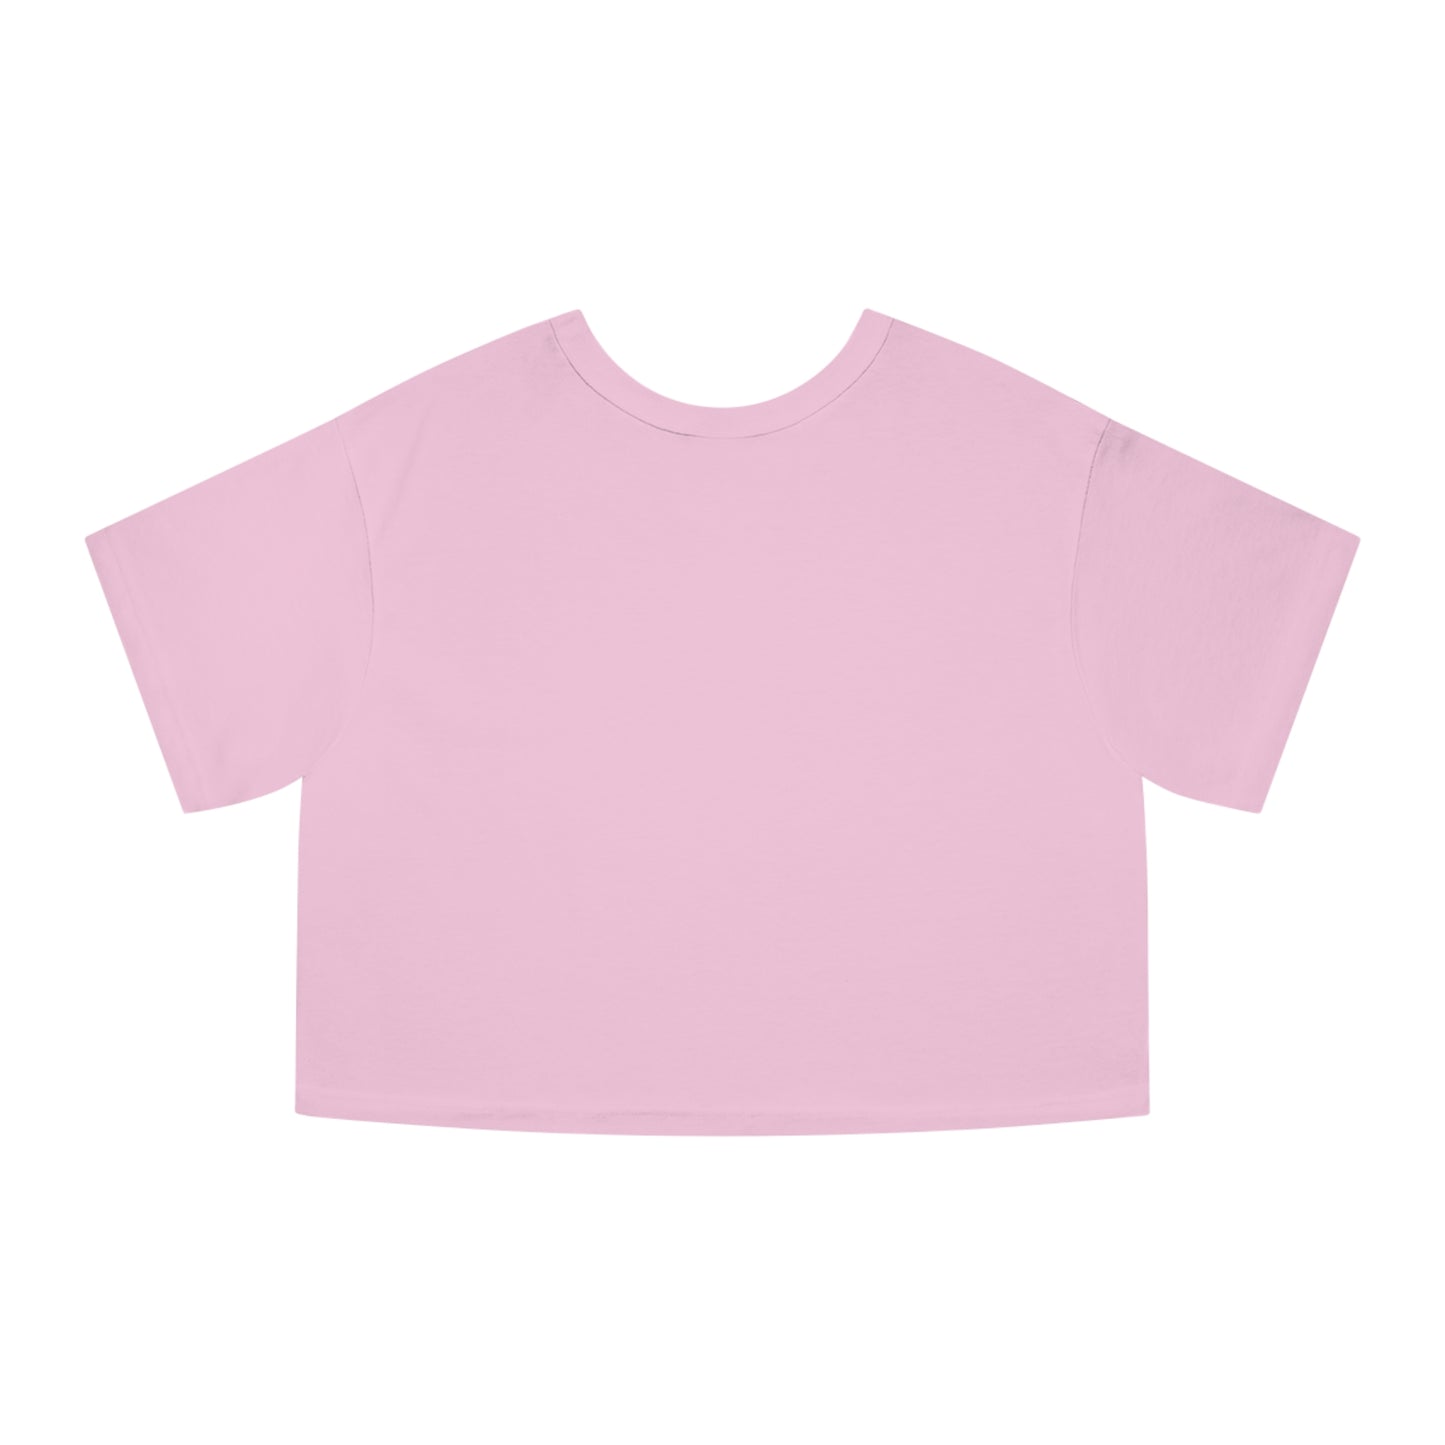 Inner Self - Pink - Women's Crop Top